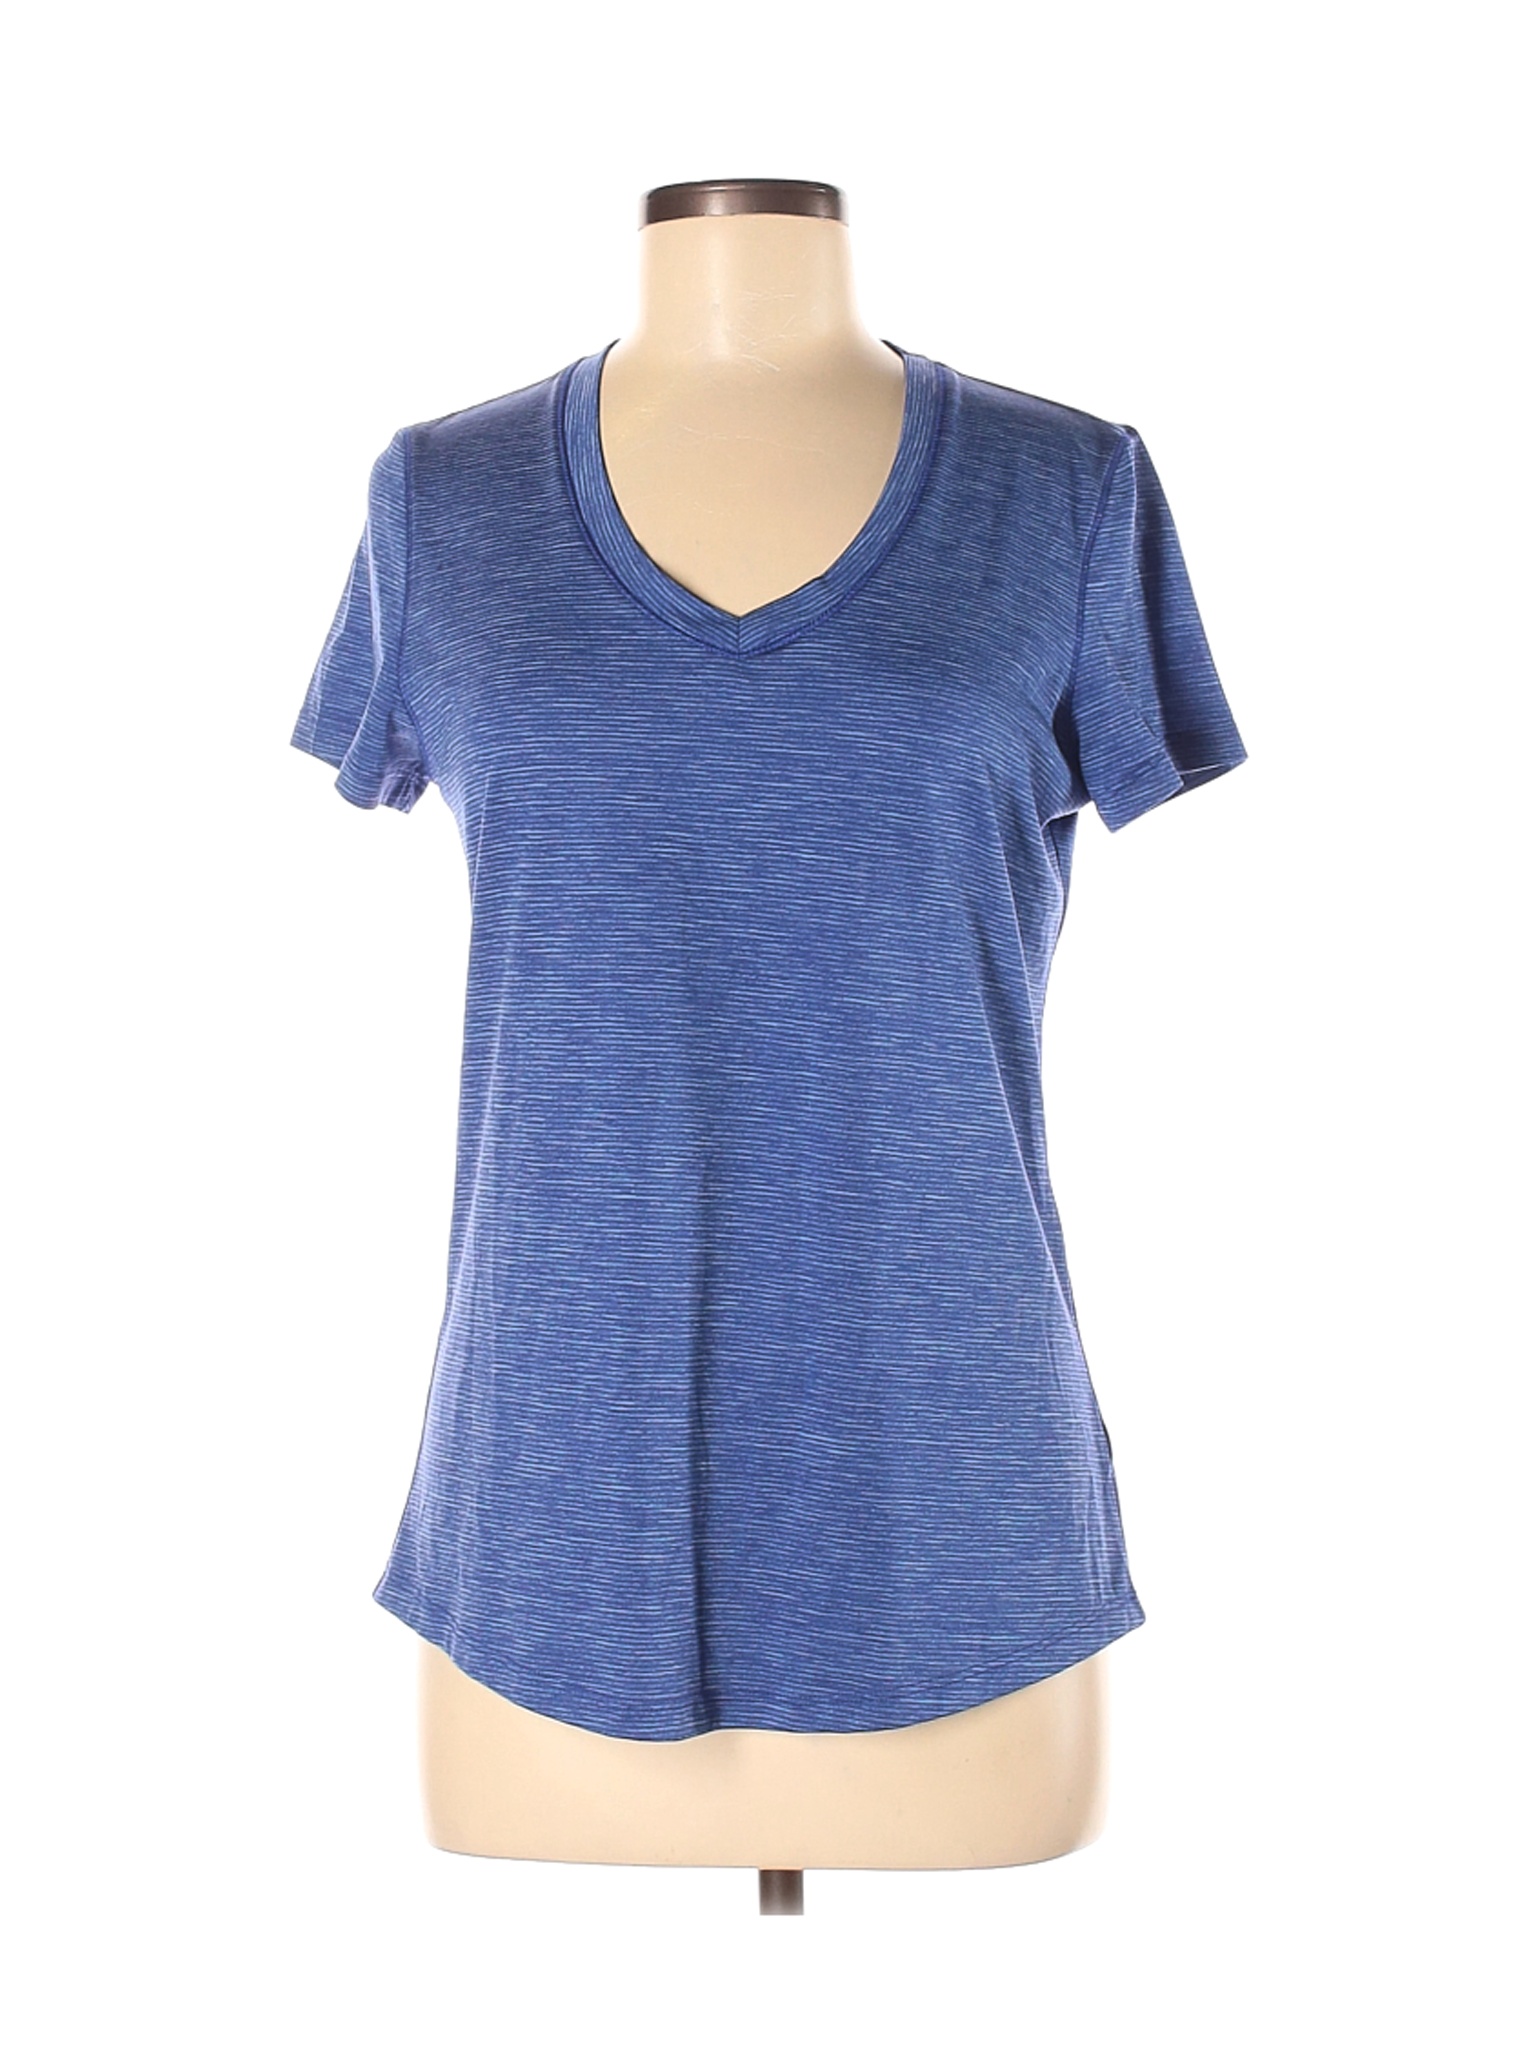 MTA Sport Women Blue Active T-Shirt M | eBay